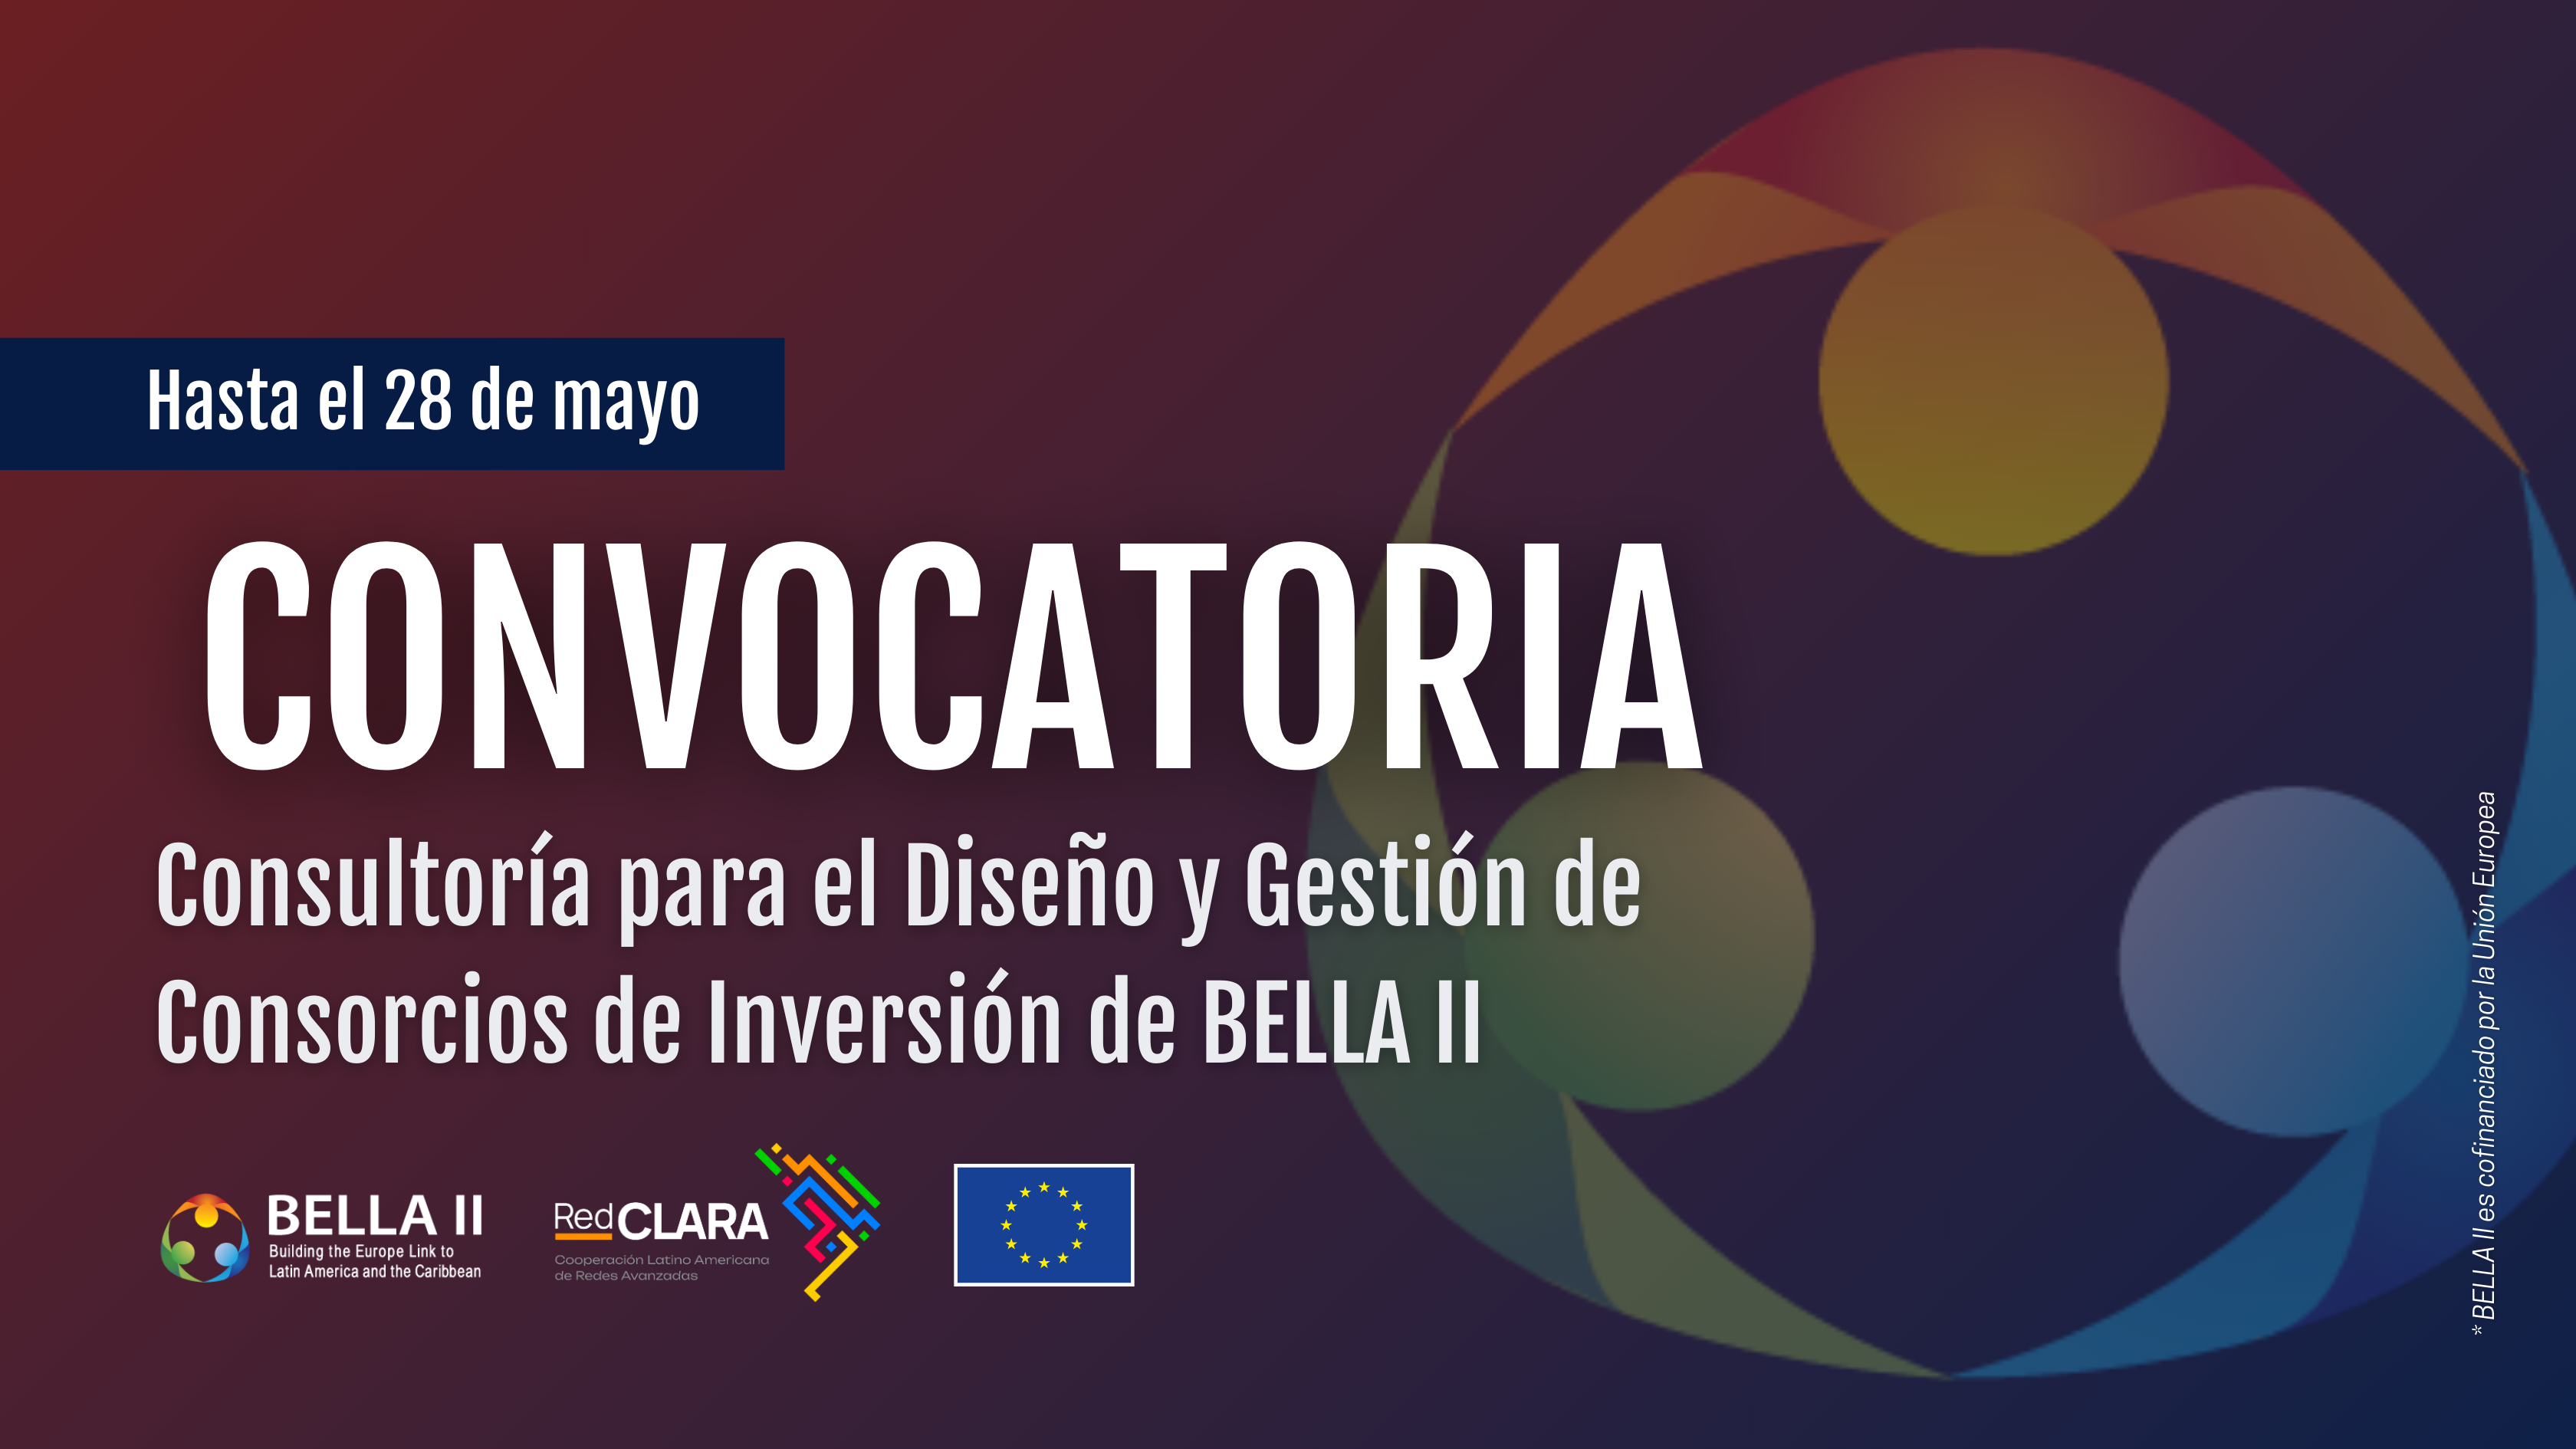 Invitación a participar en consultoría para el Diseño y Gestión de Consorcios de Inversión de BELLA II